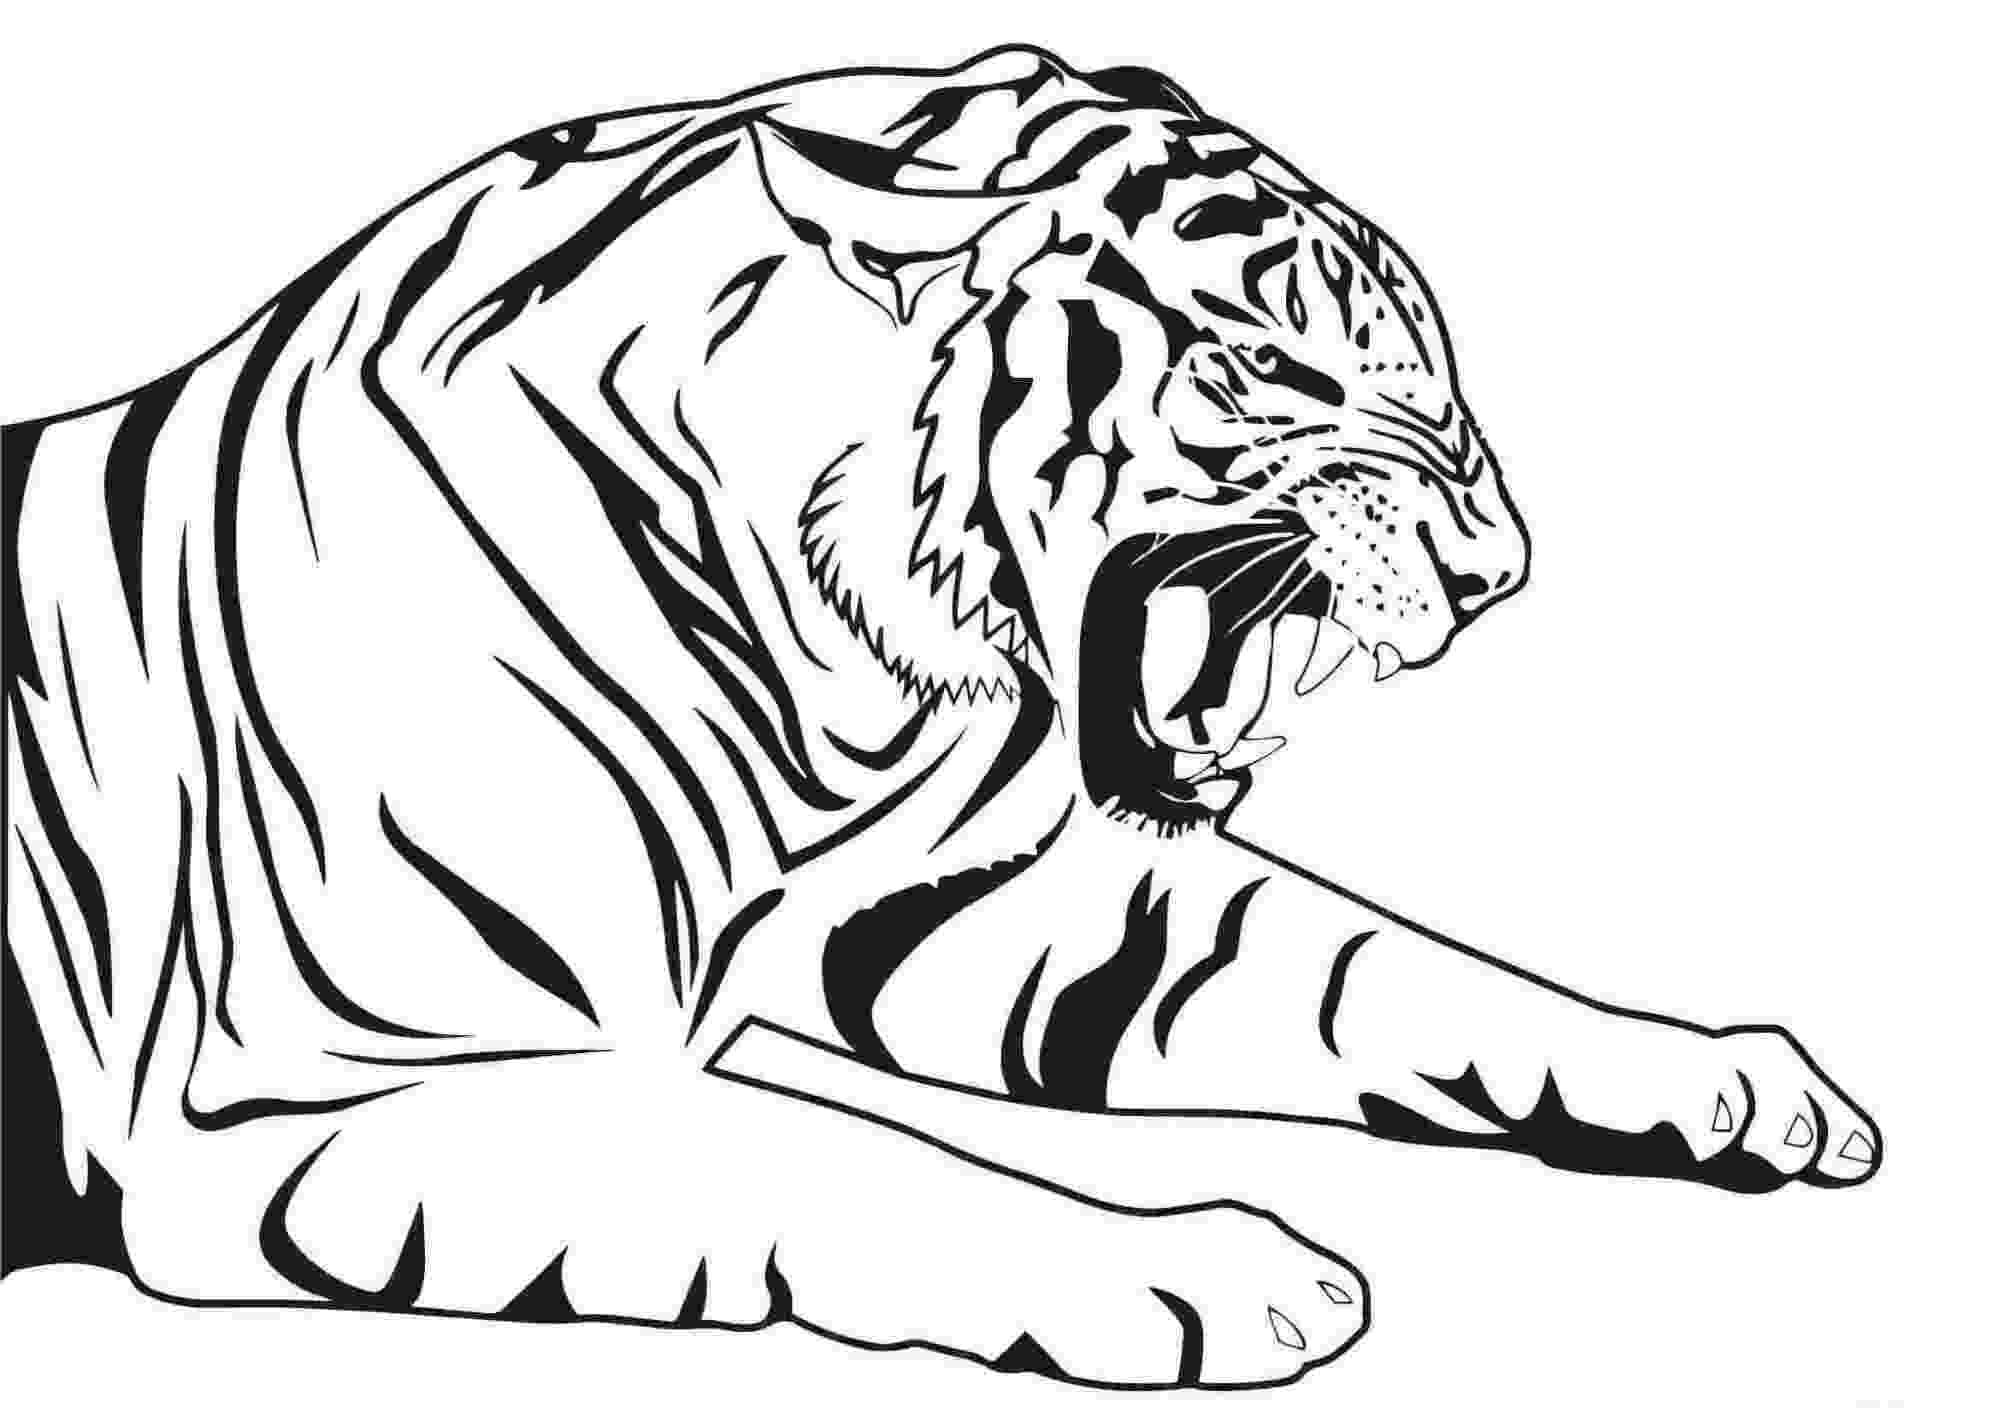 Рисунки в формате jpg. Тигр. Раскраска. Раскраска тигра. Тигр раскраска для детей. Рисунок тигра.